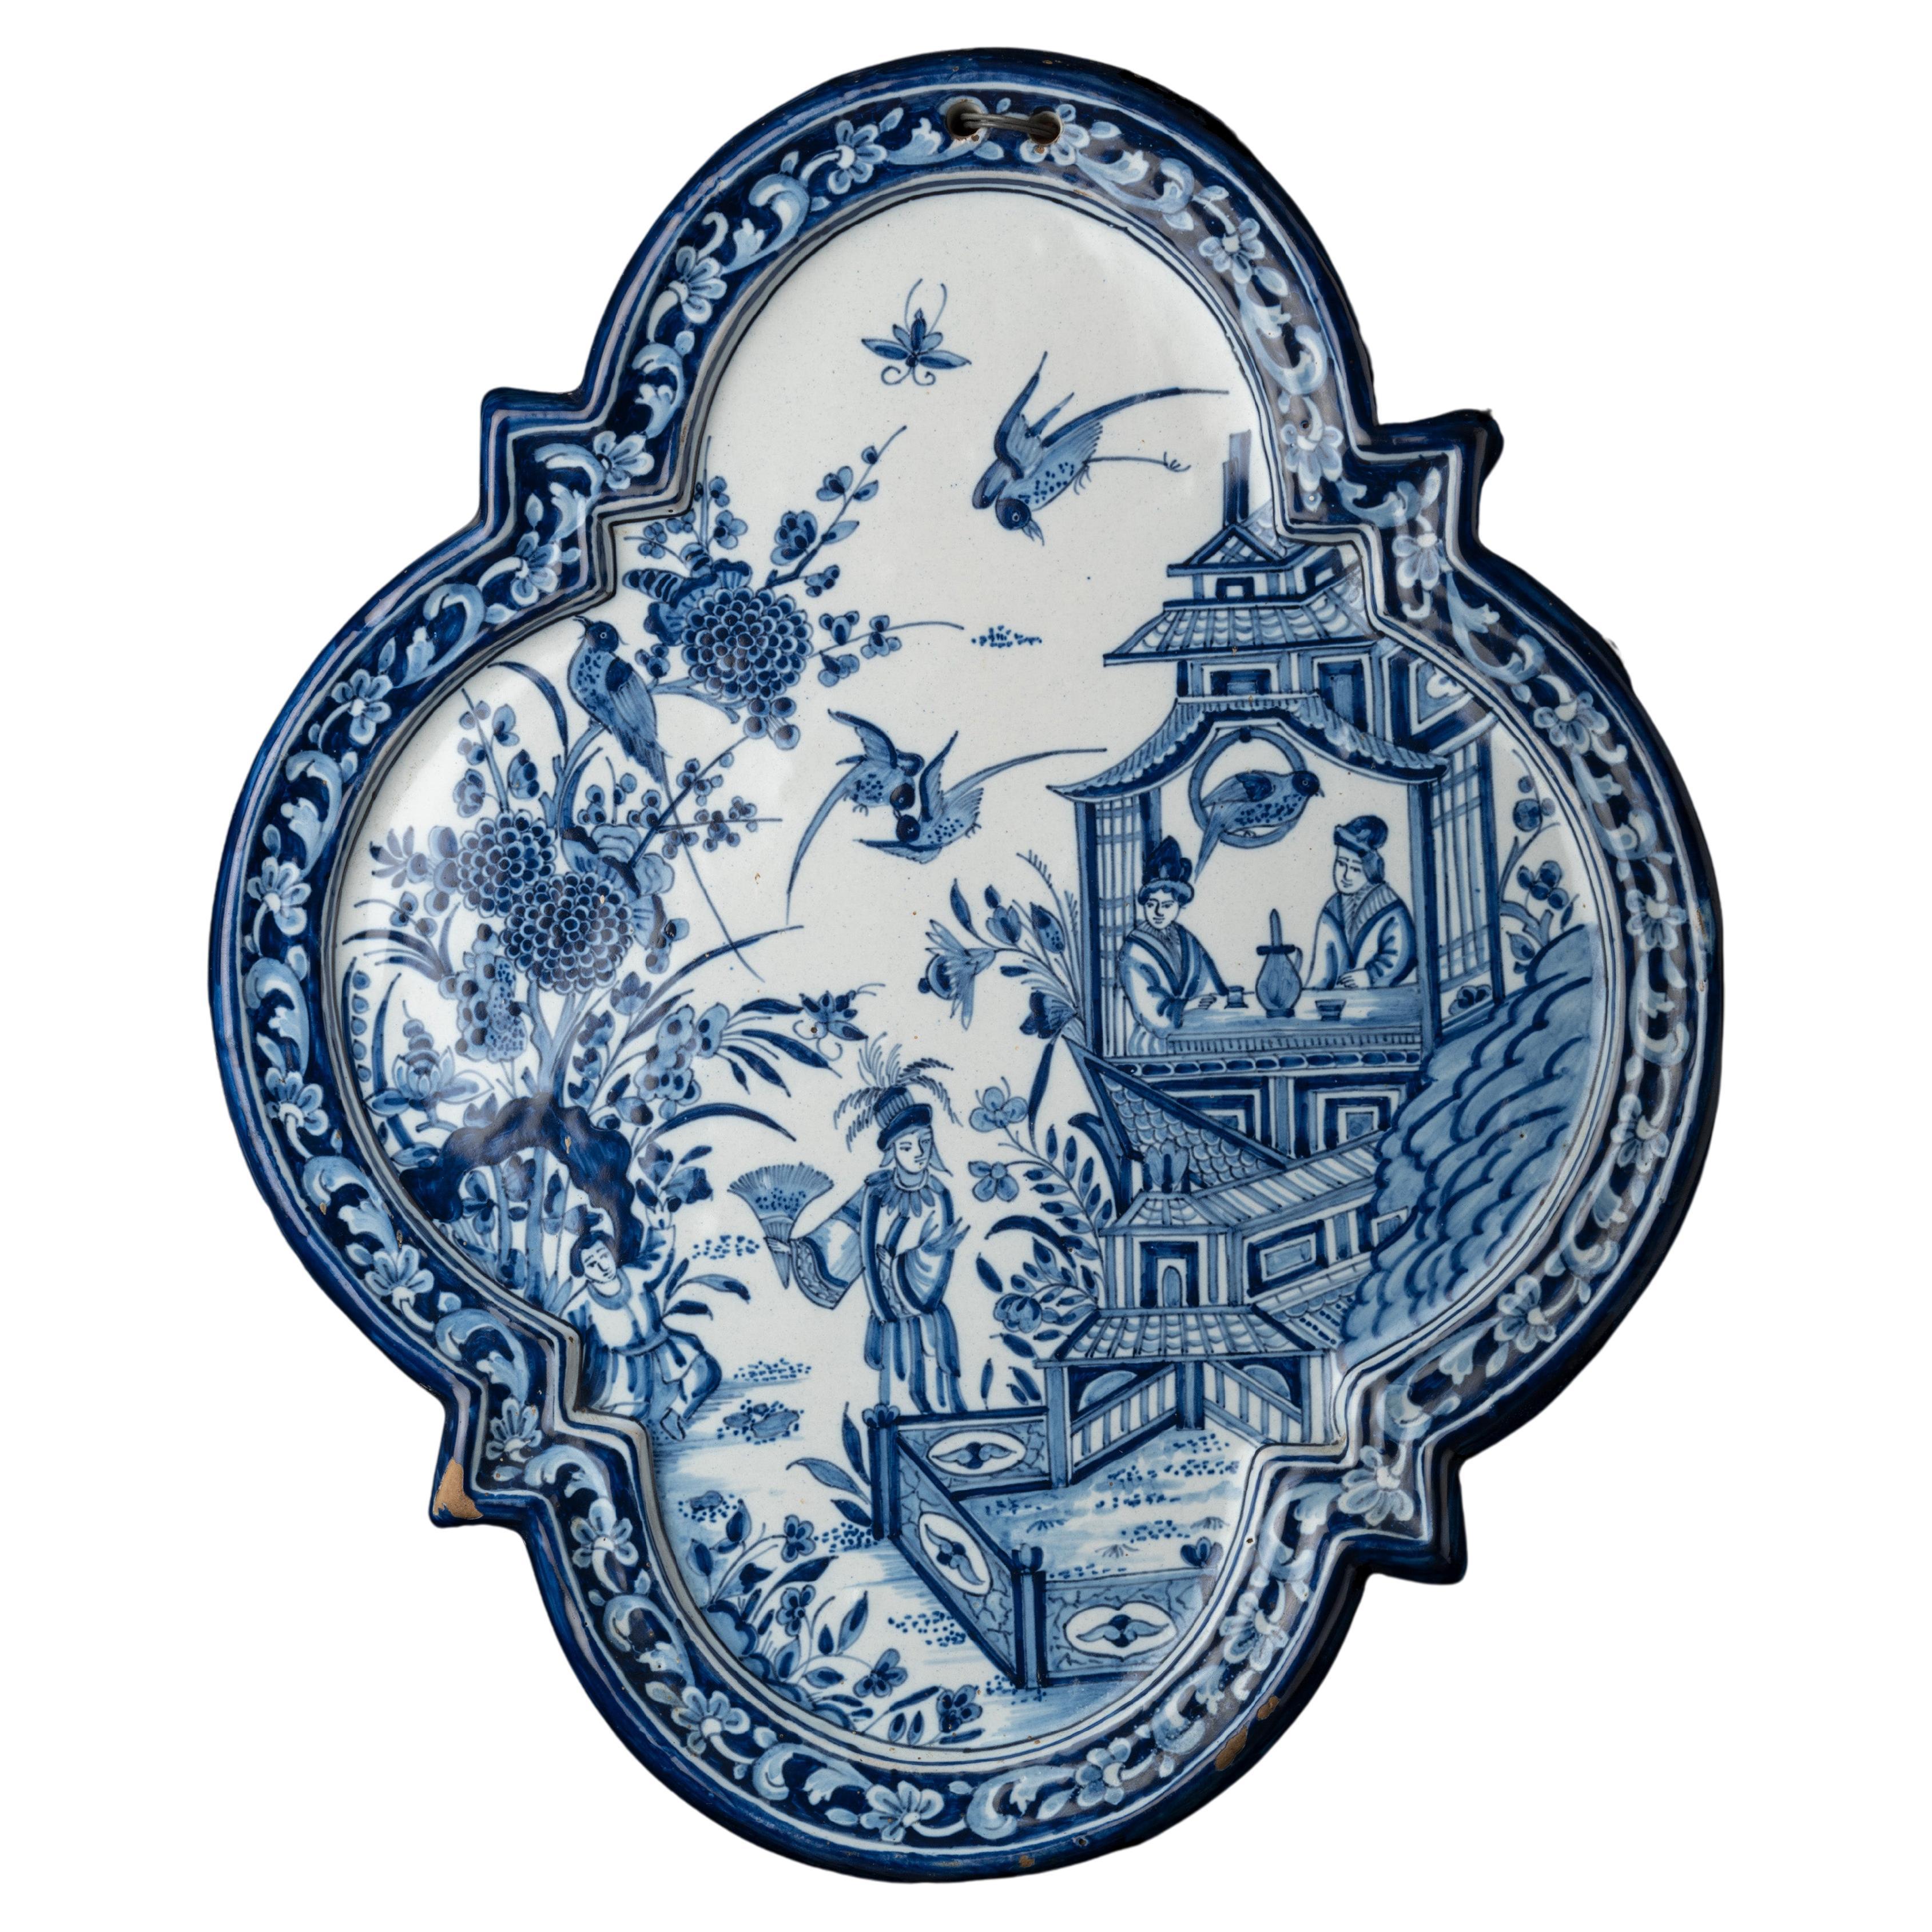 Zinnglasierte Plakette im Stil von altem holländischem Delfter Porzellan